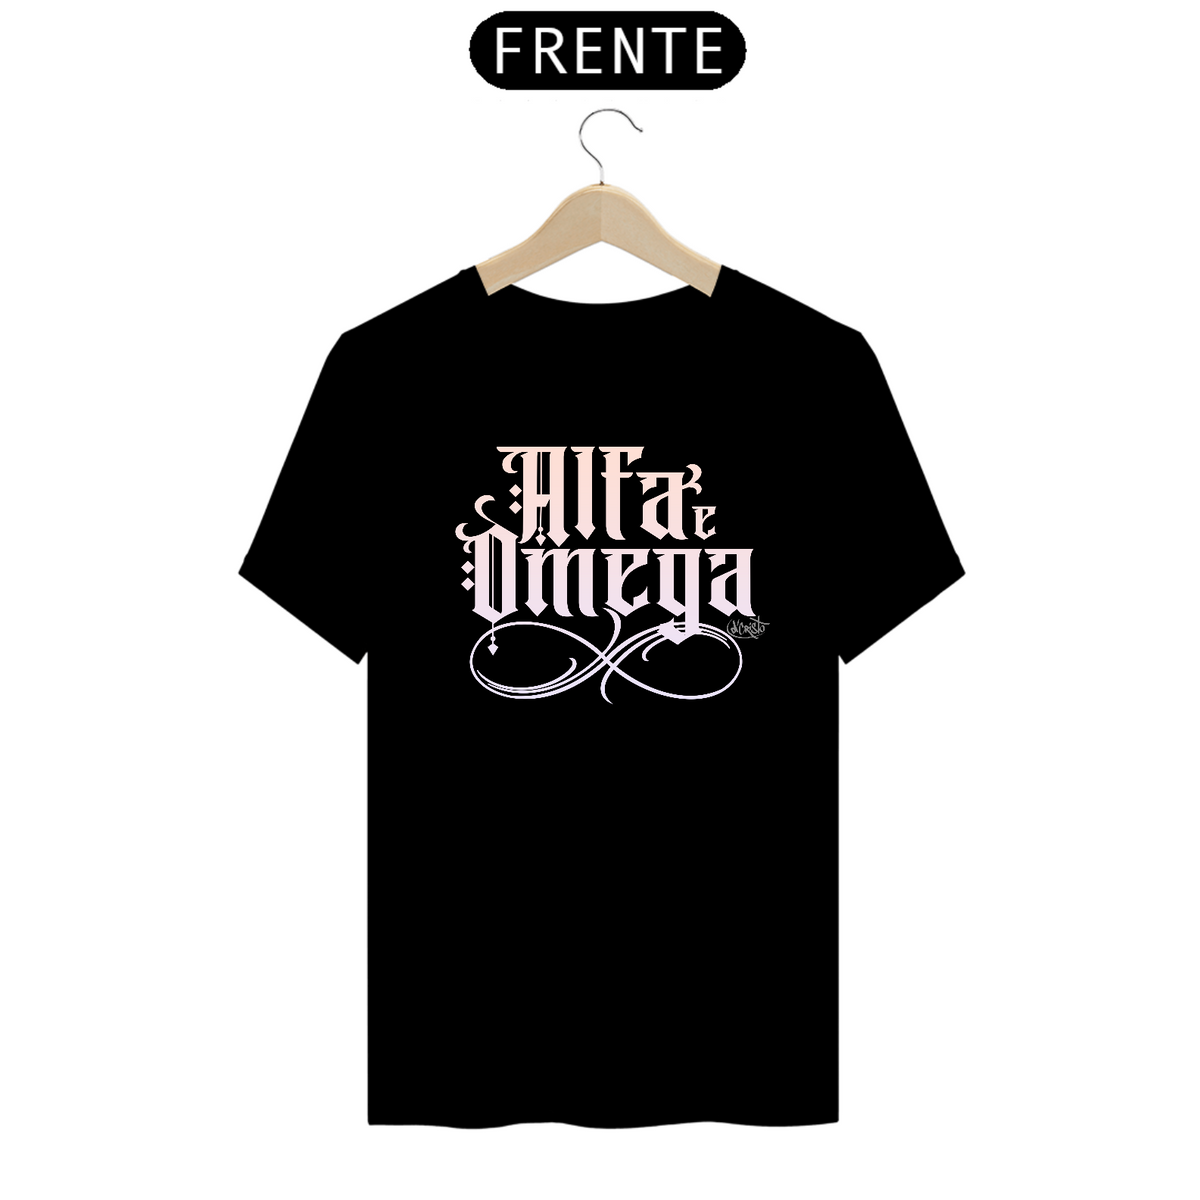 Nome do produto: Camiseta Alfa e Omega (cores escuras)